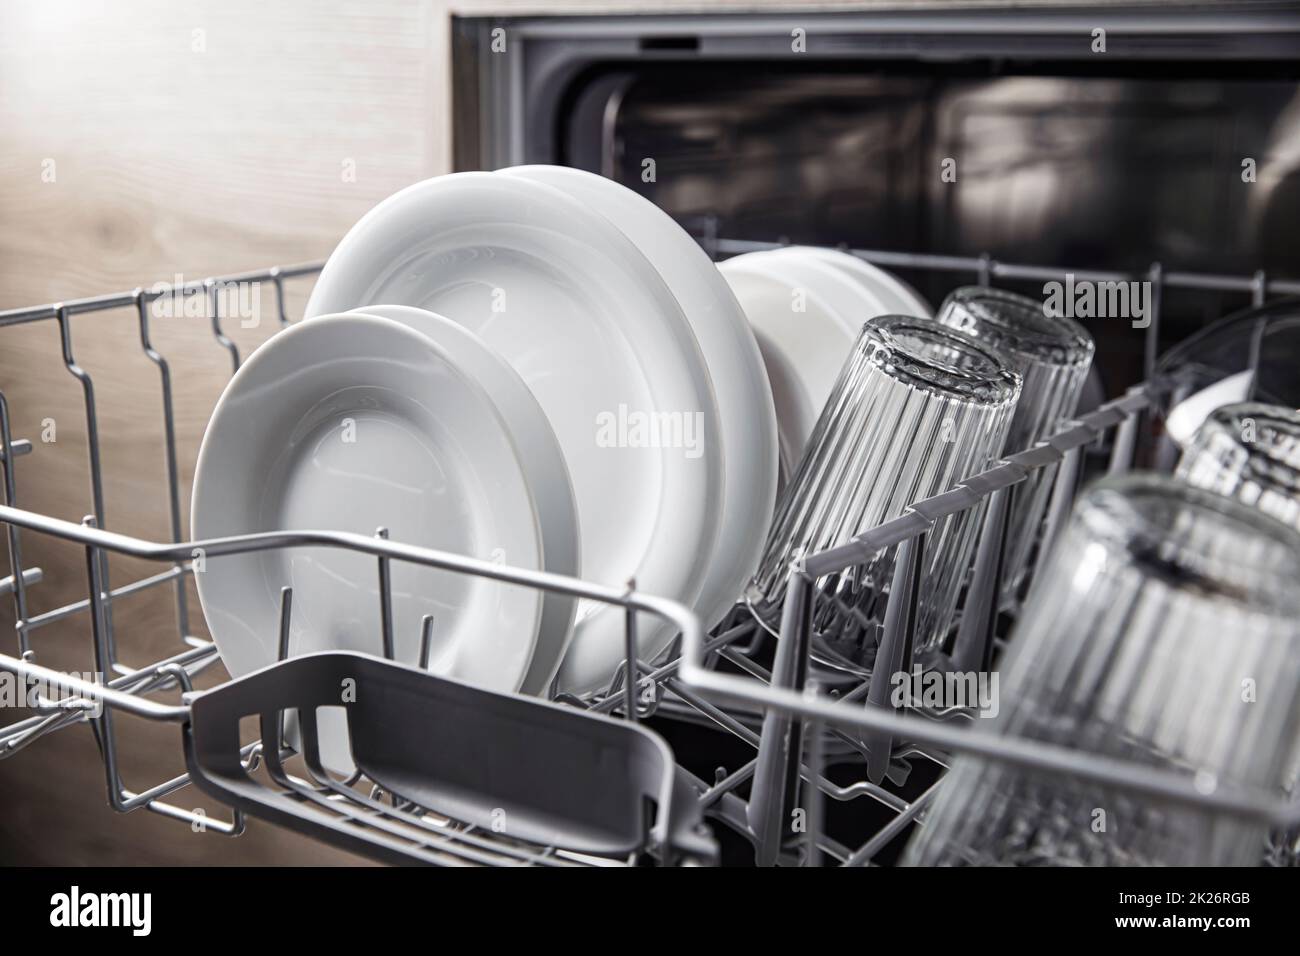 Lavastoviglie aperta con stoviglie pulite all'interno, posate, bicchieri, piatti in cucina Foto Stock